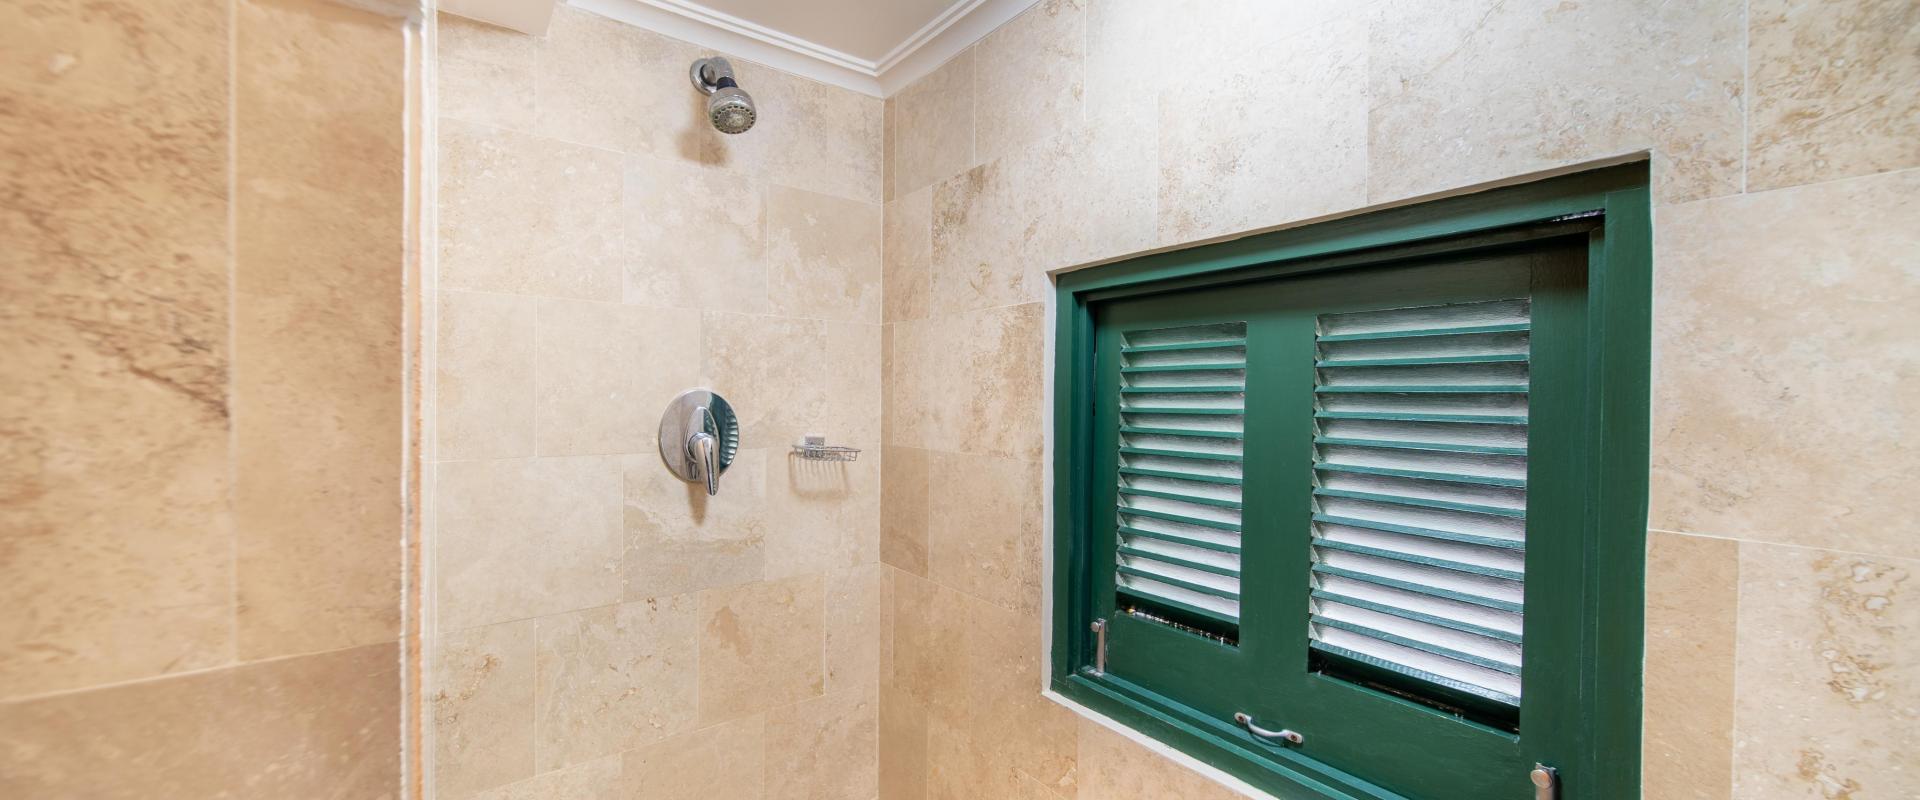 Coco Mullins Barbados Holiday Rental Home Bathroom 4 Shower